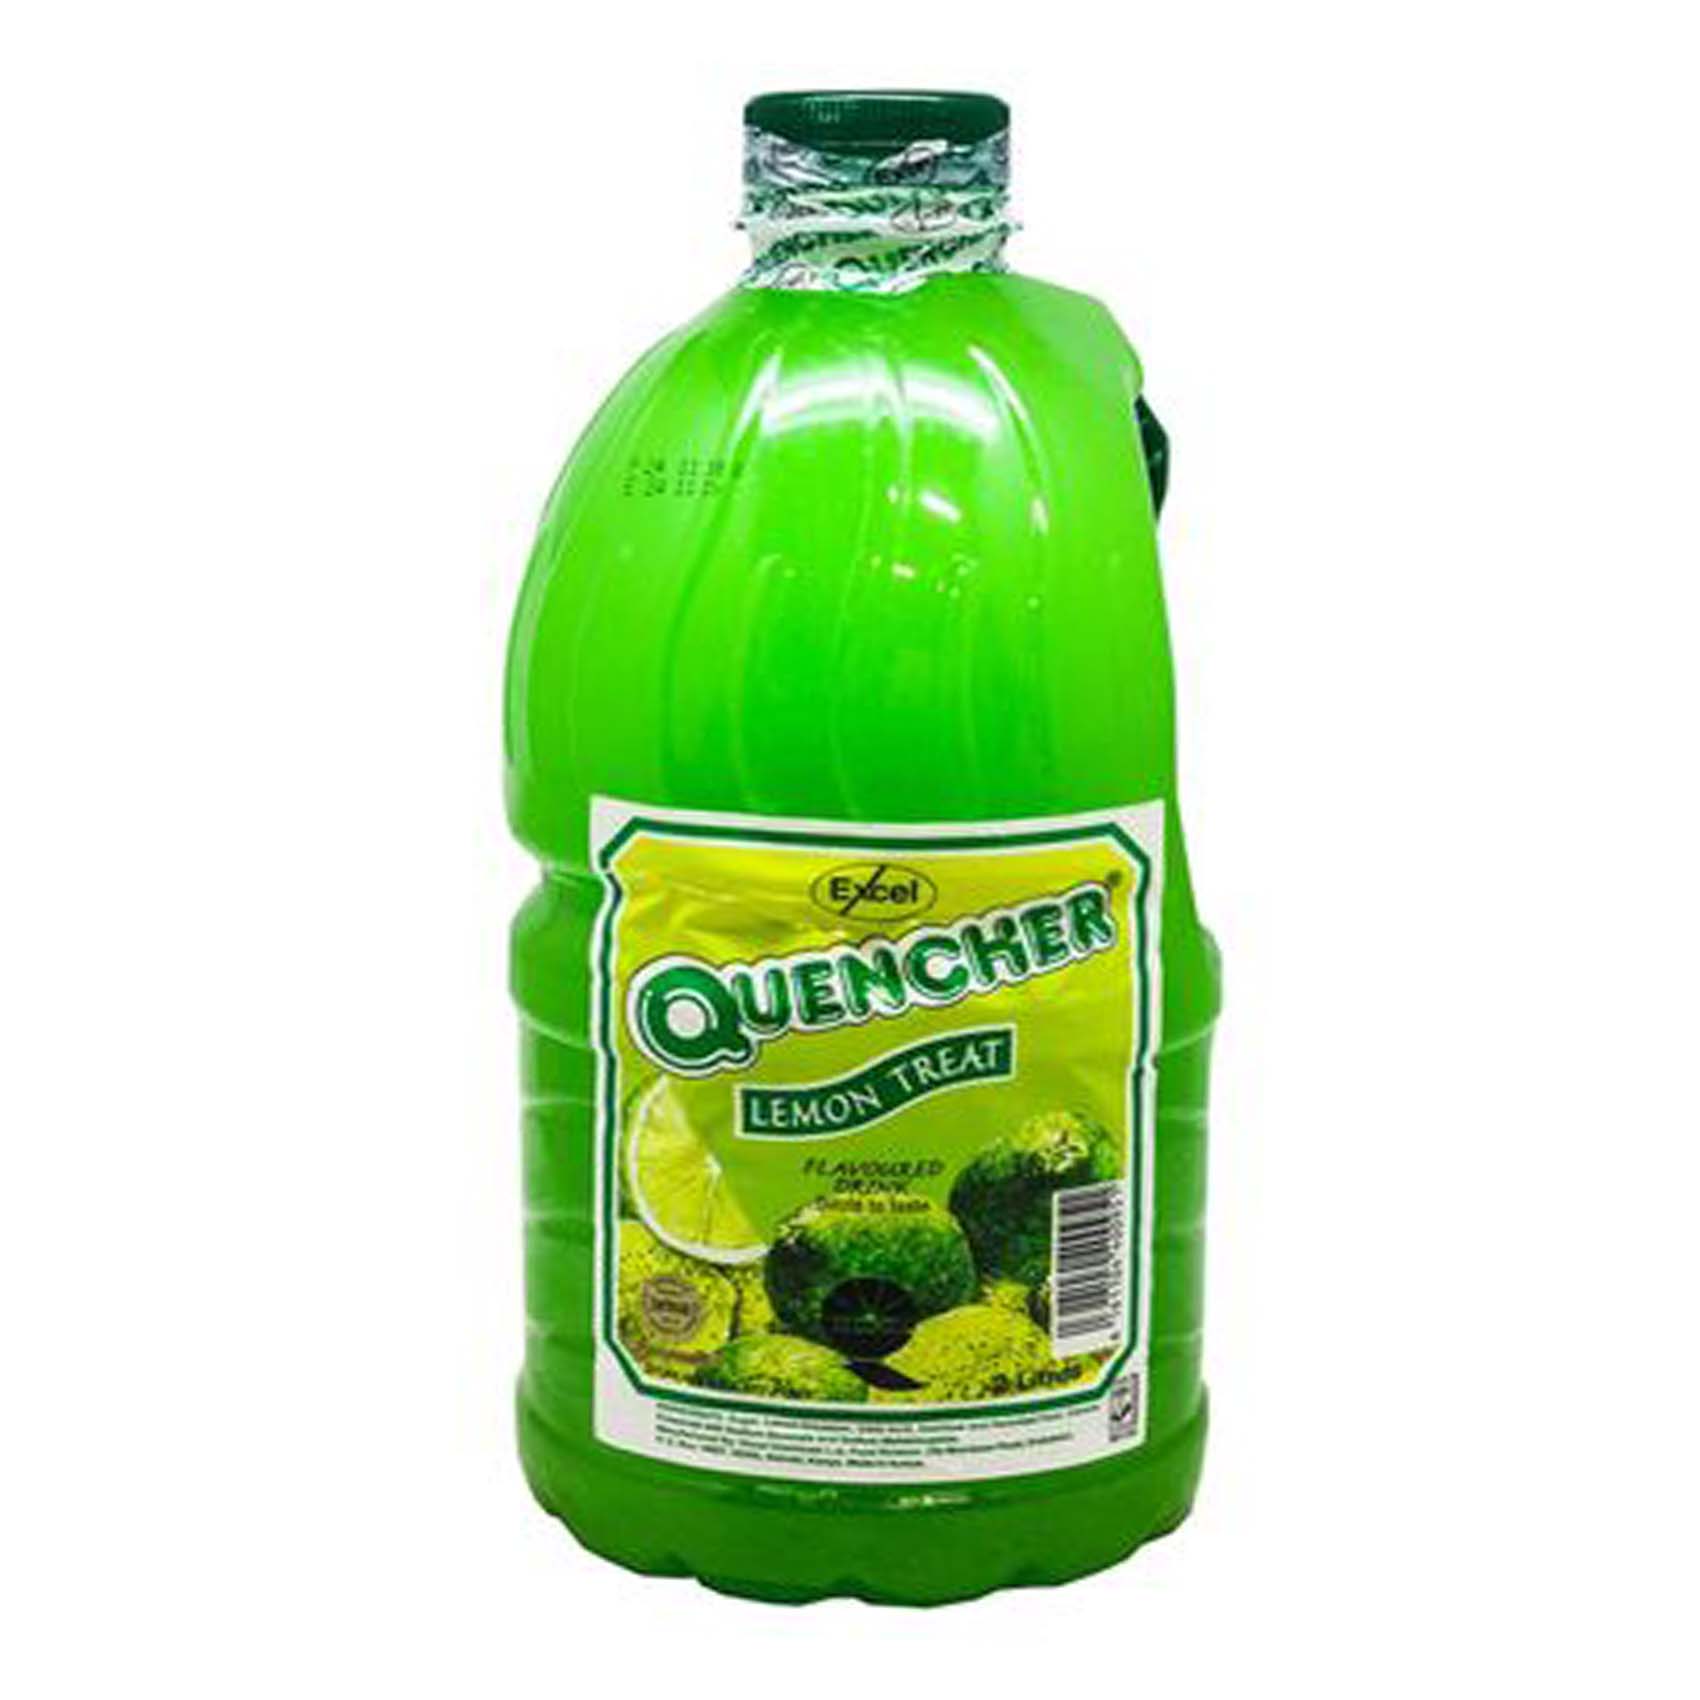 Excel Quencher Lemon Treat Drink 2L